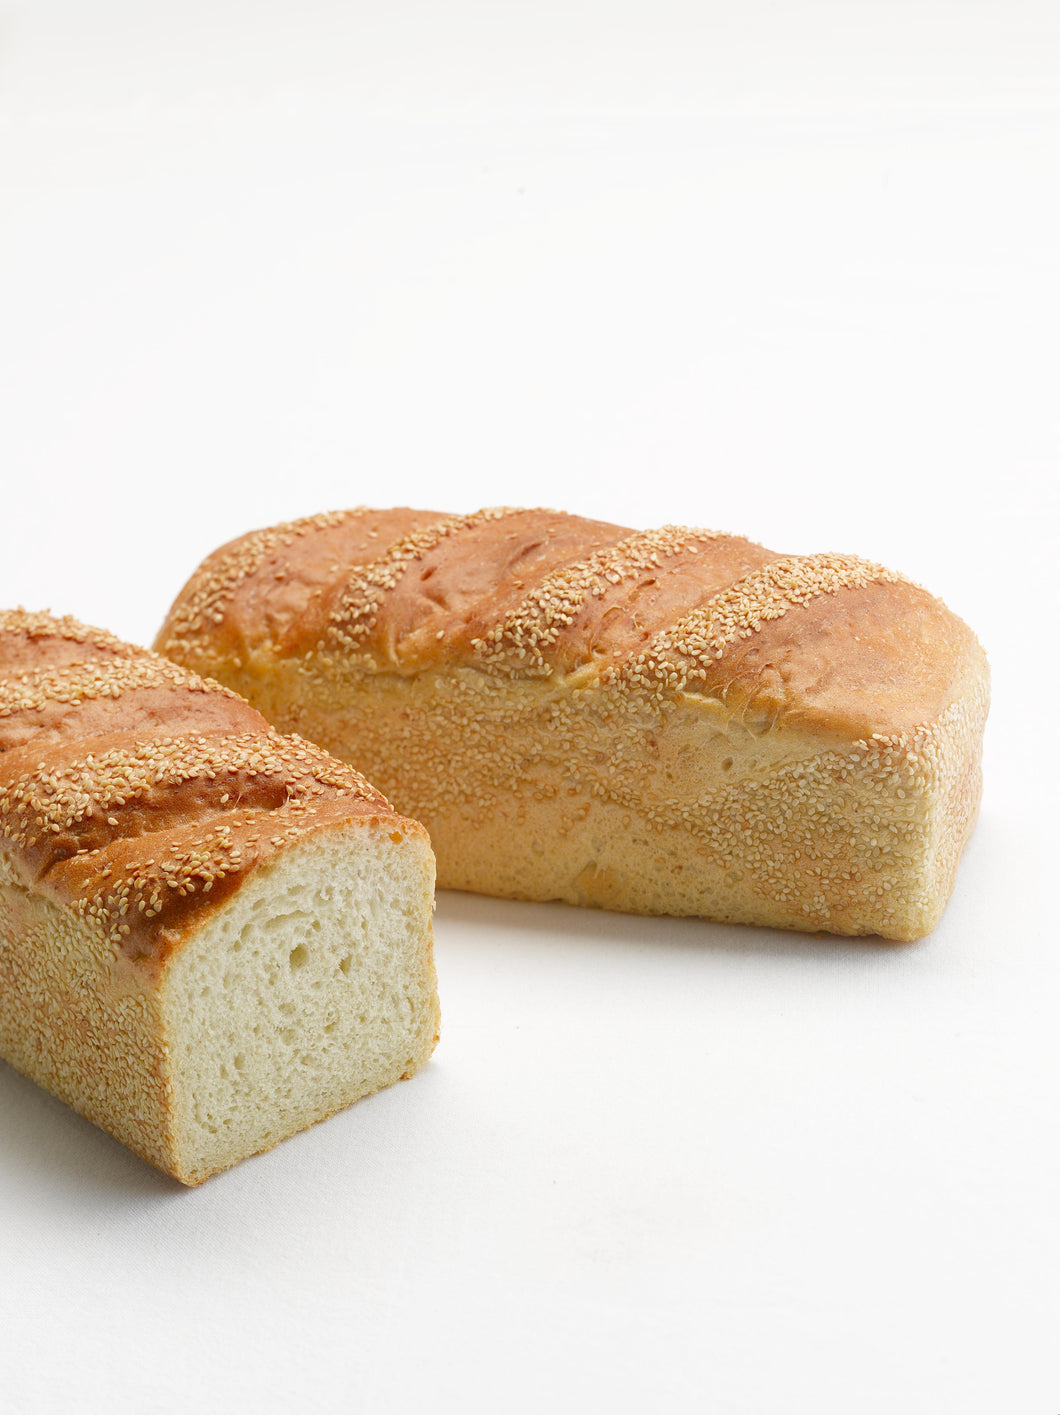 Plain square loaf - sliced